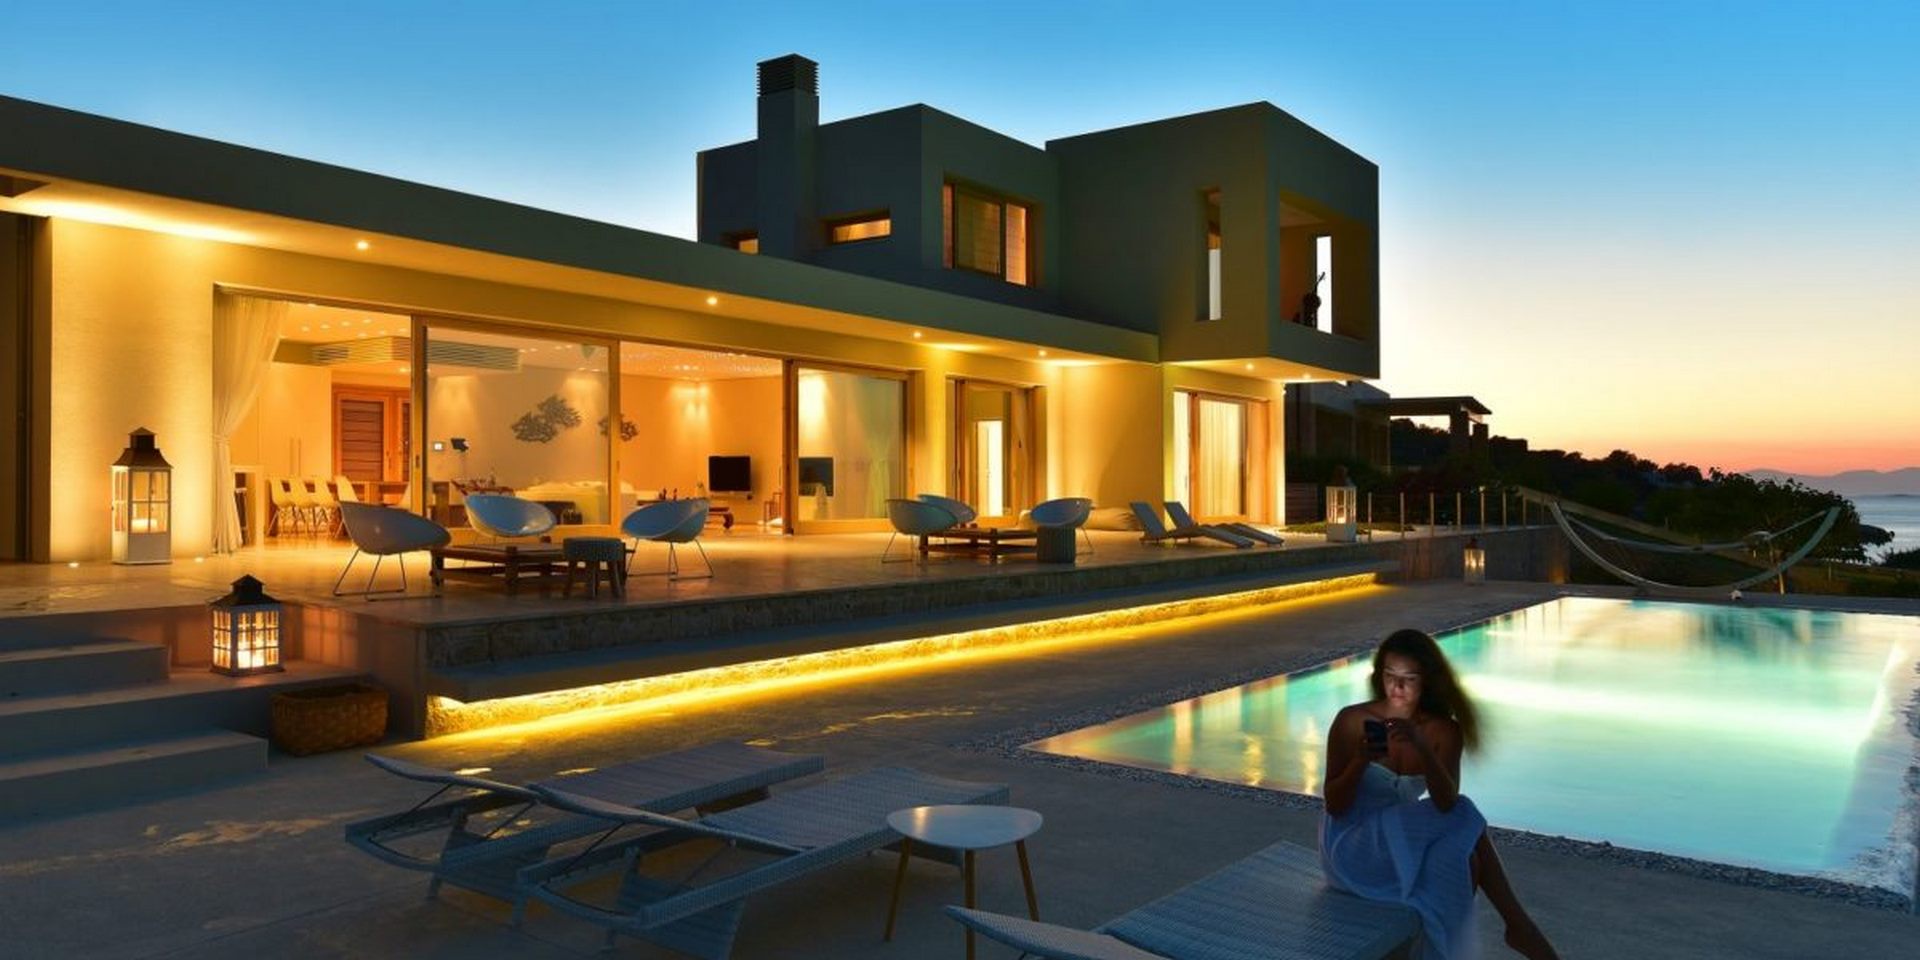 Sea Concept Private Villa in Aegina island - Greece